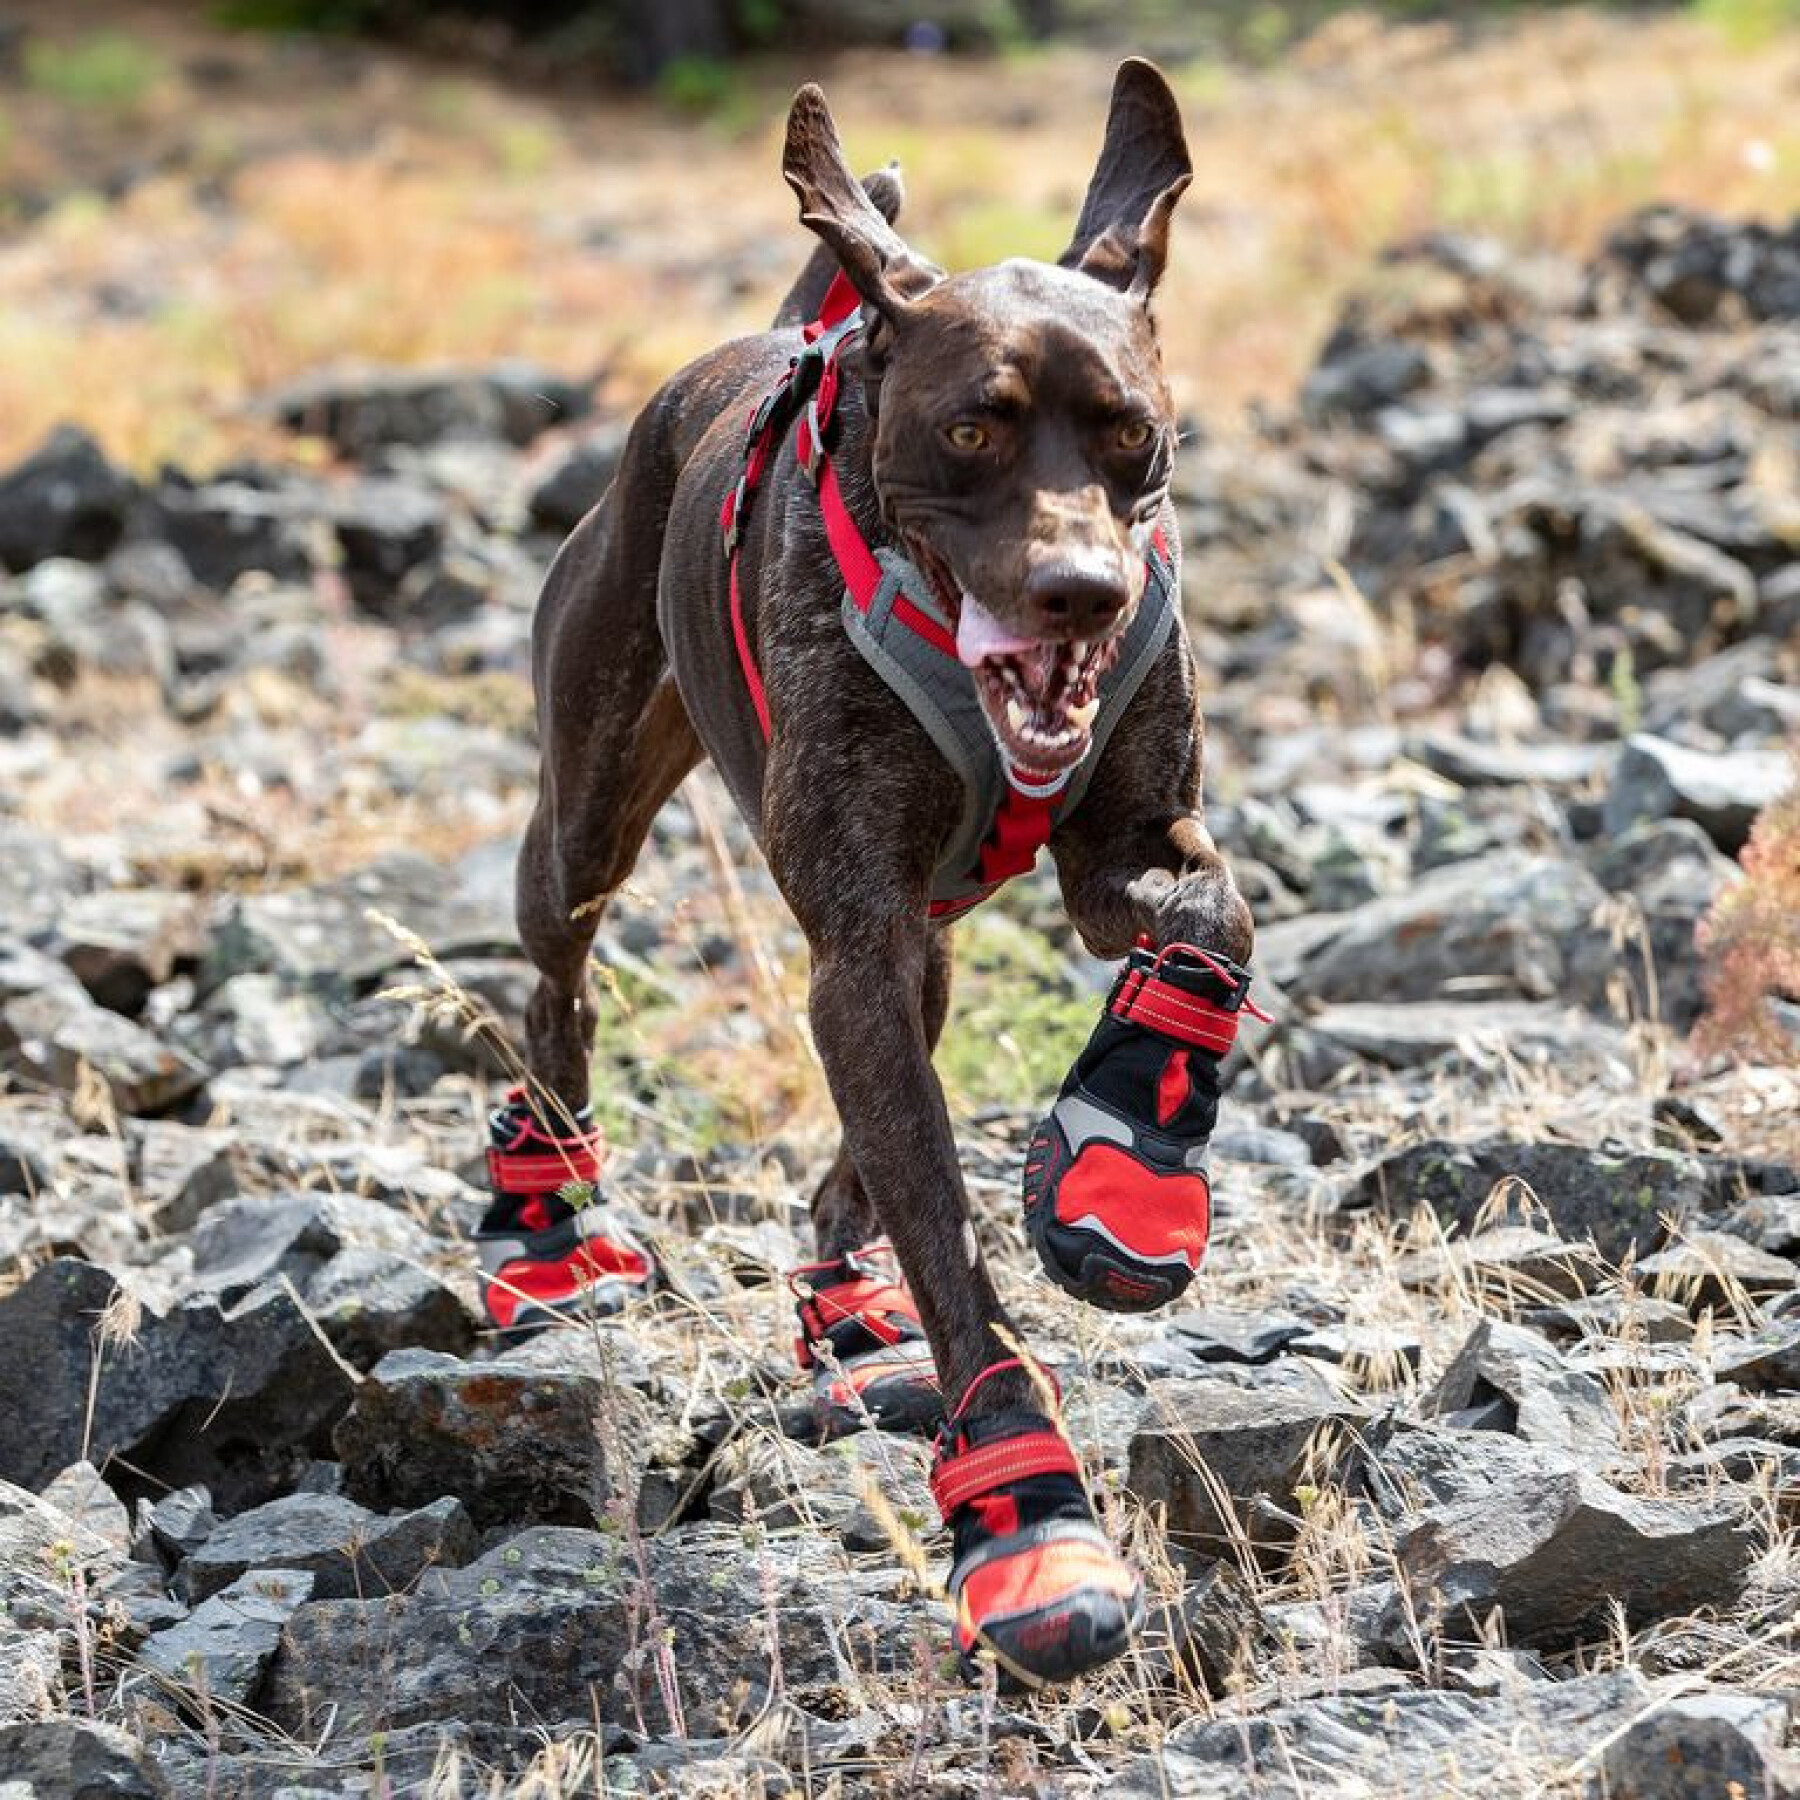 Trail shoes for dogs Kurgo Blaze (x2)